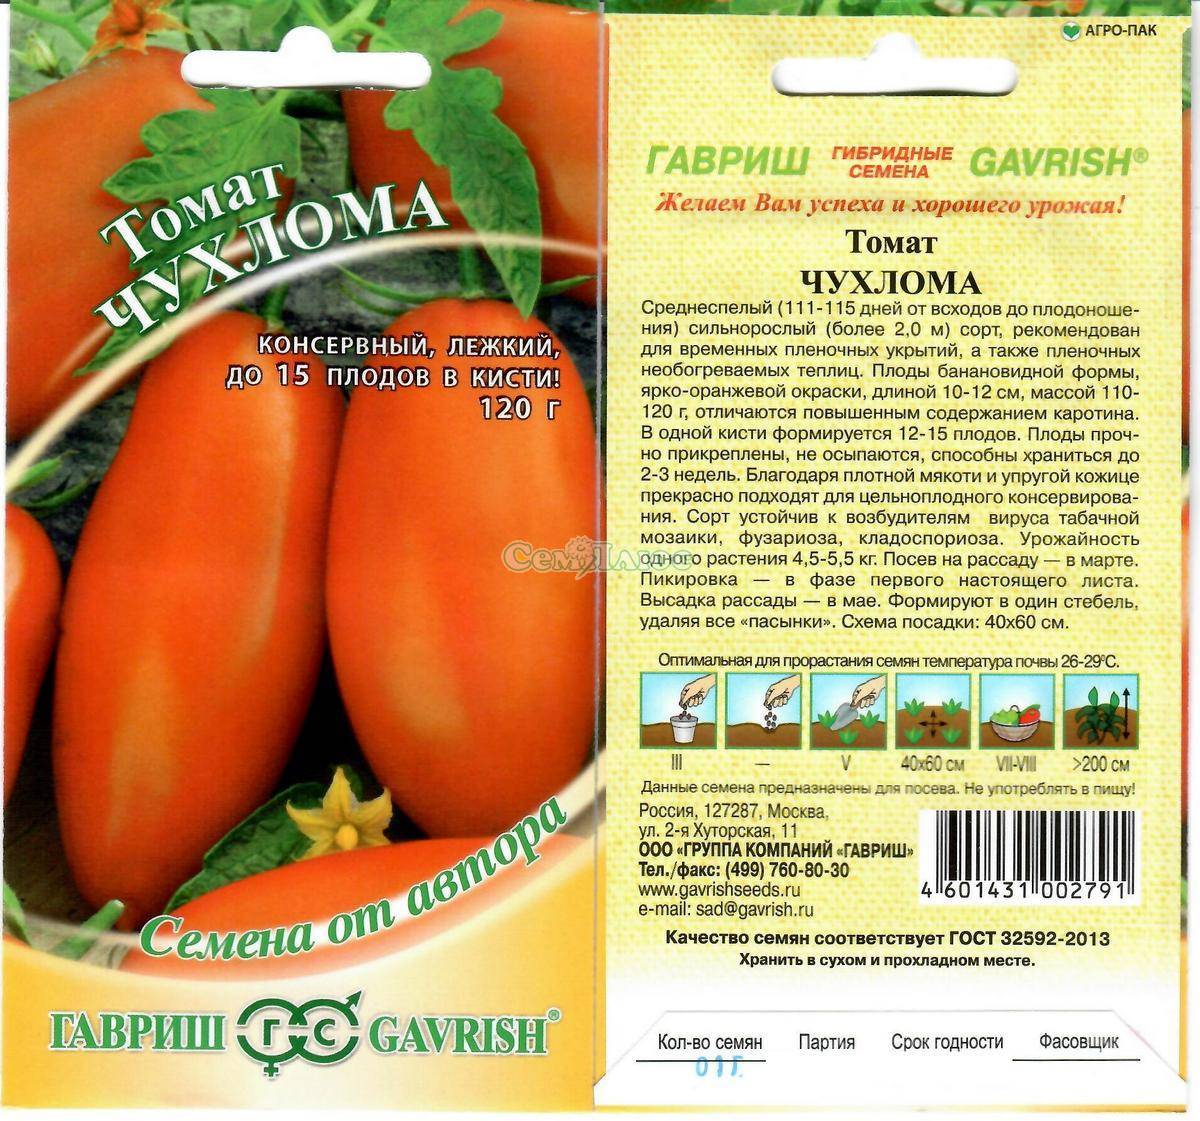 Общая характеристика гибридного томата Чухлома и агротехника выращивания